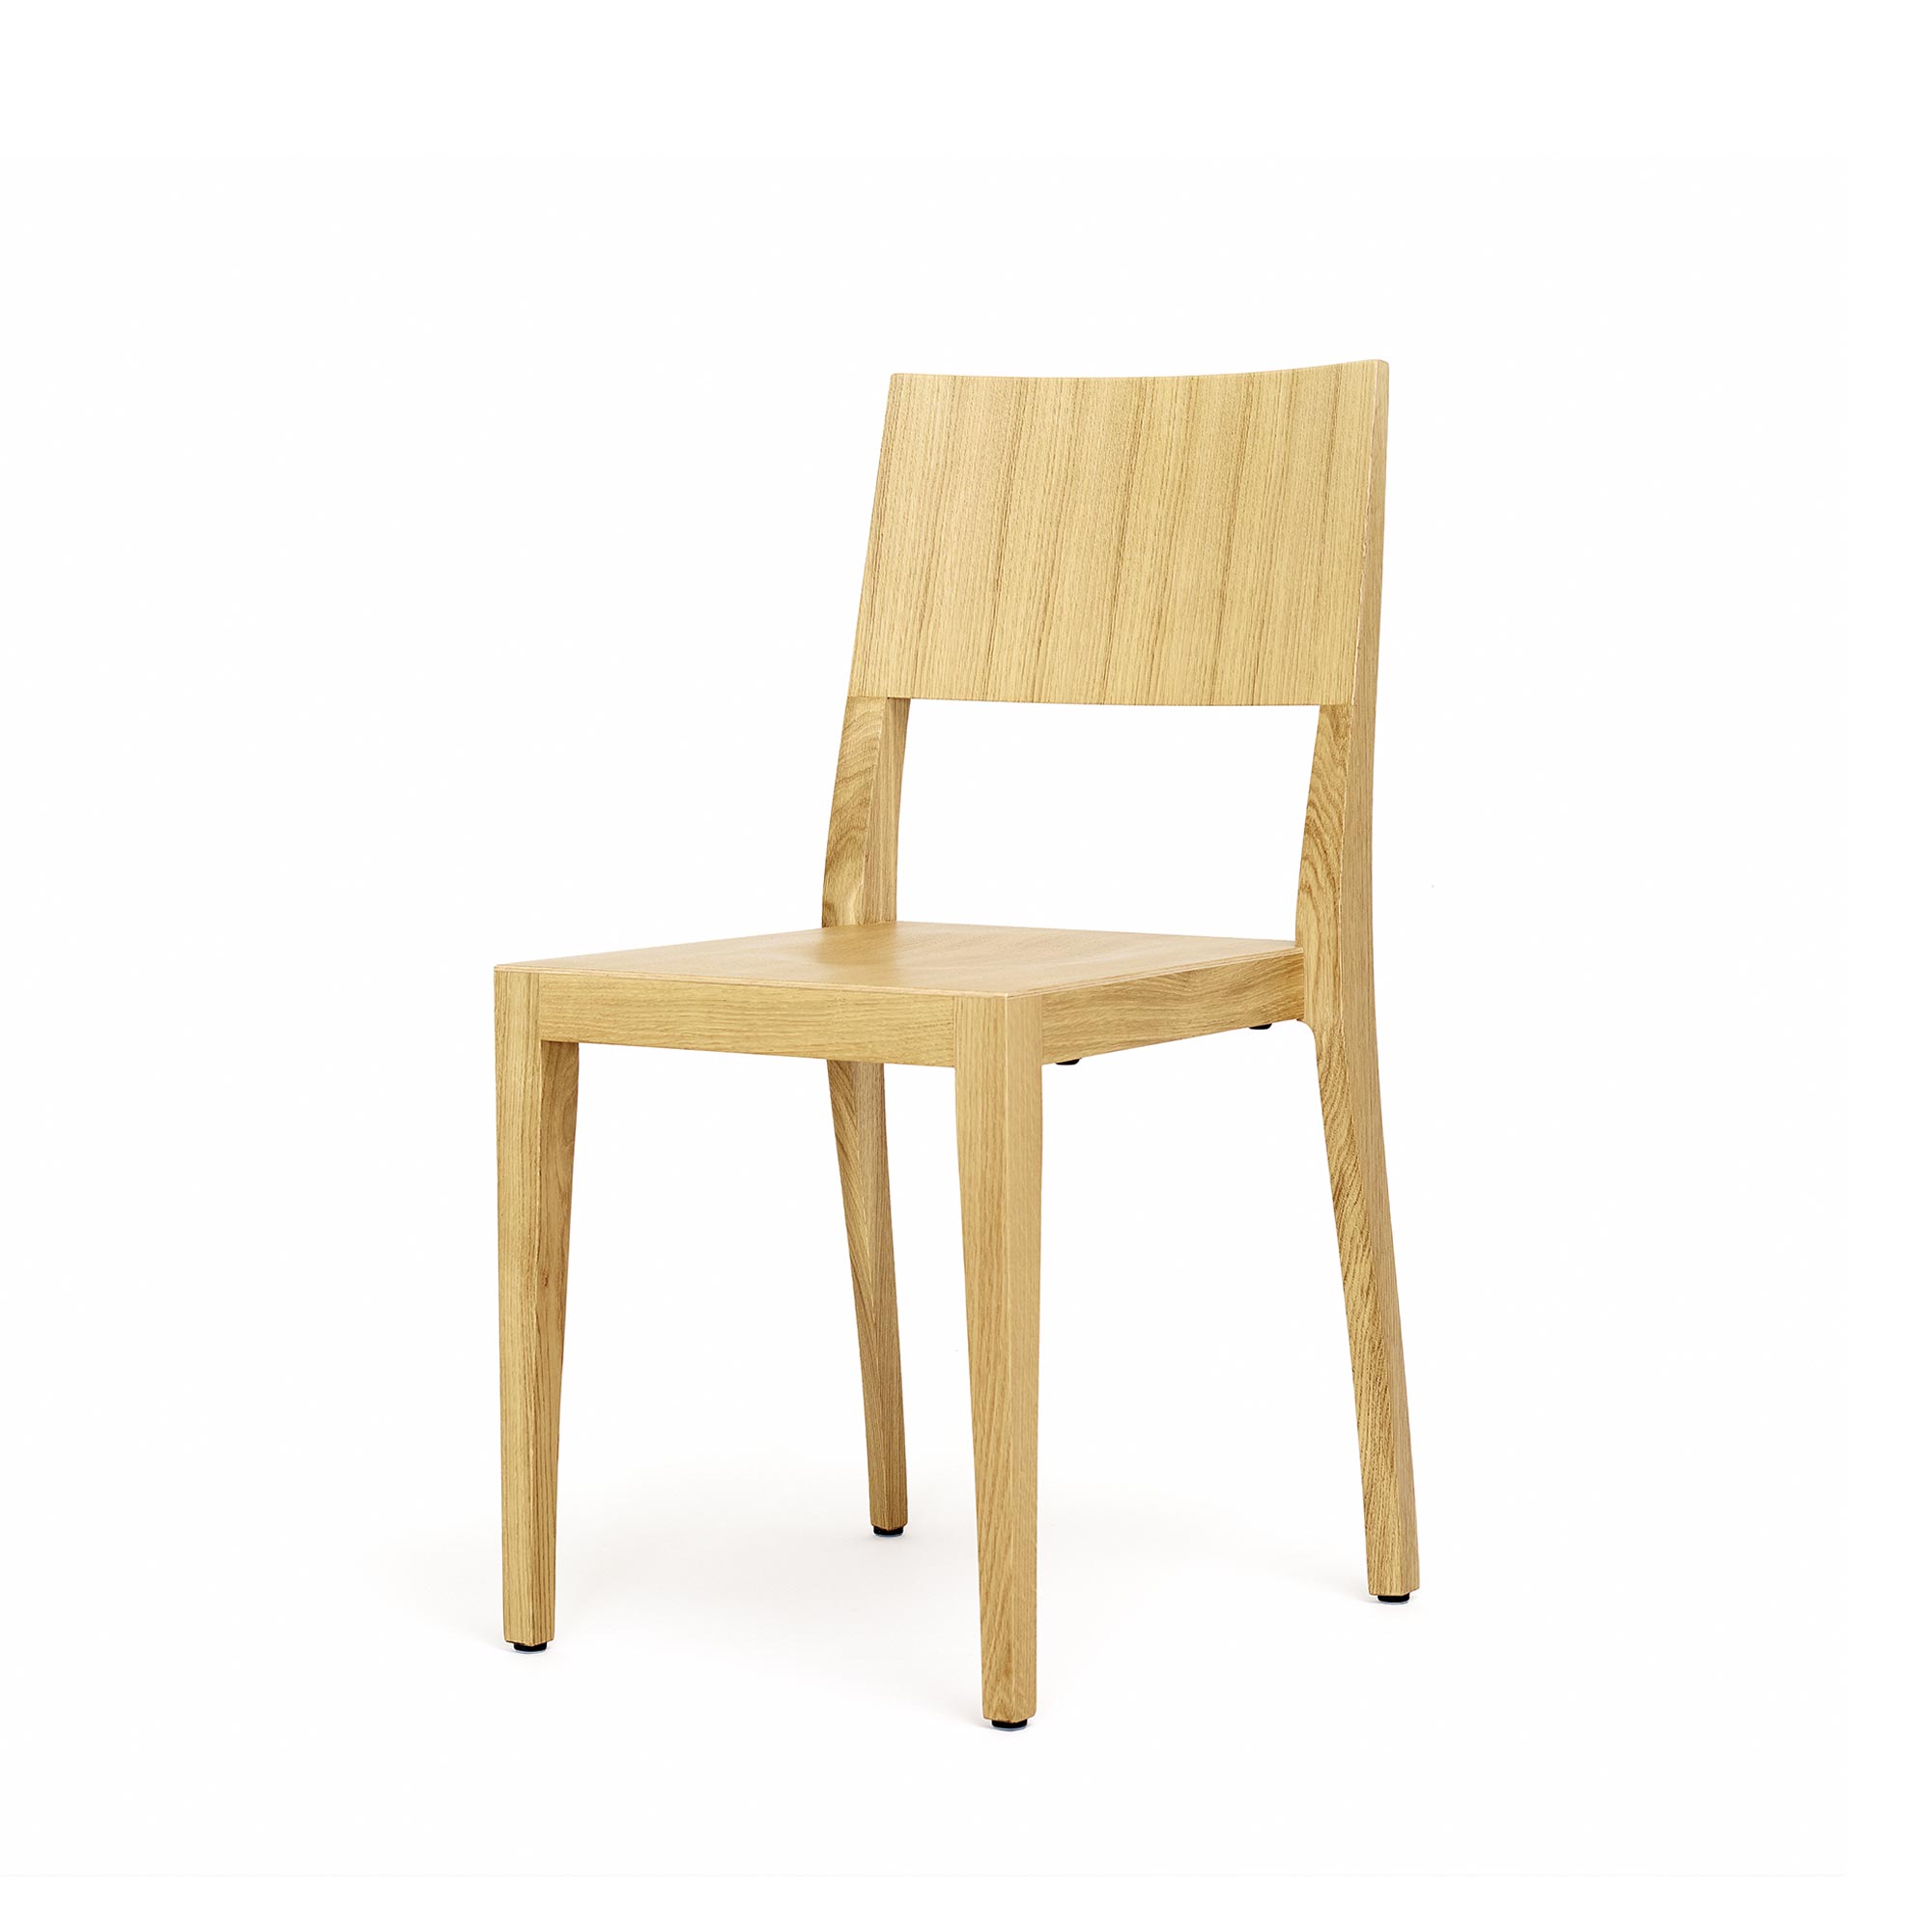 Flankenschnitt-Stuhl